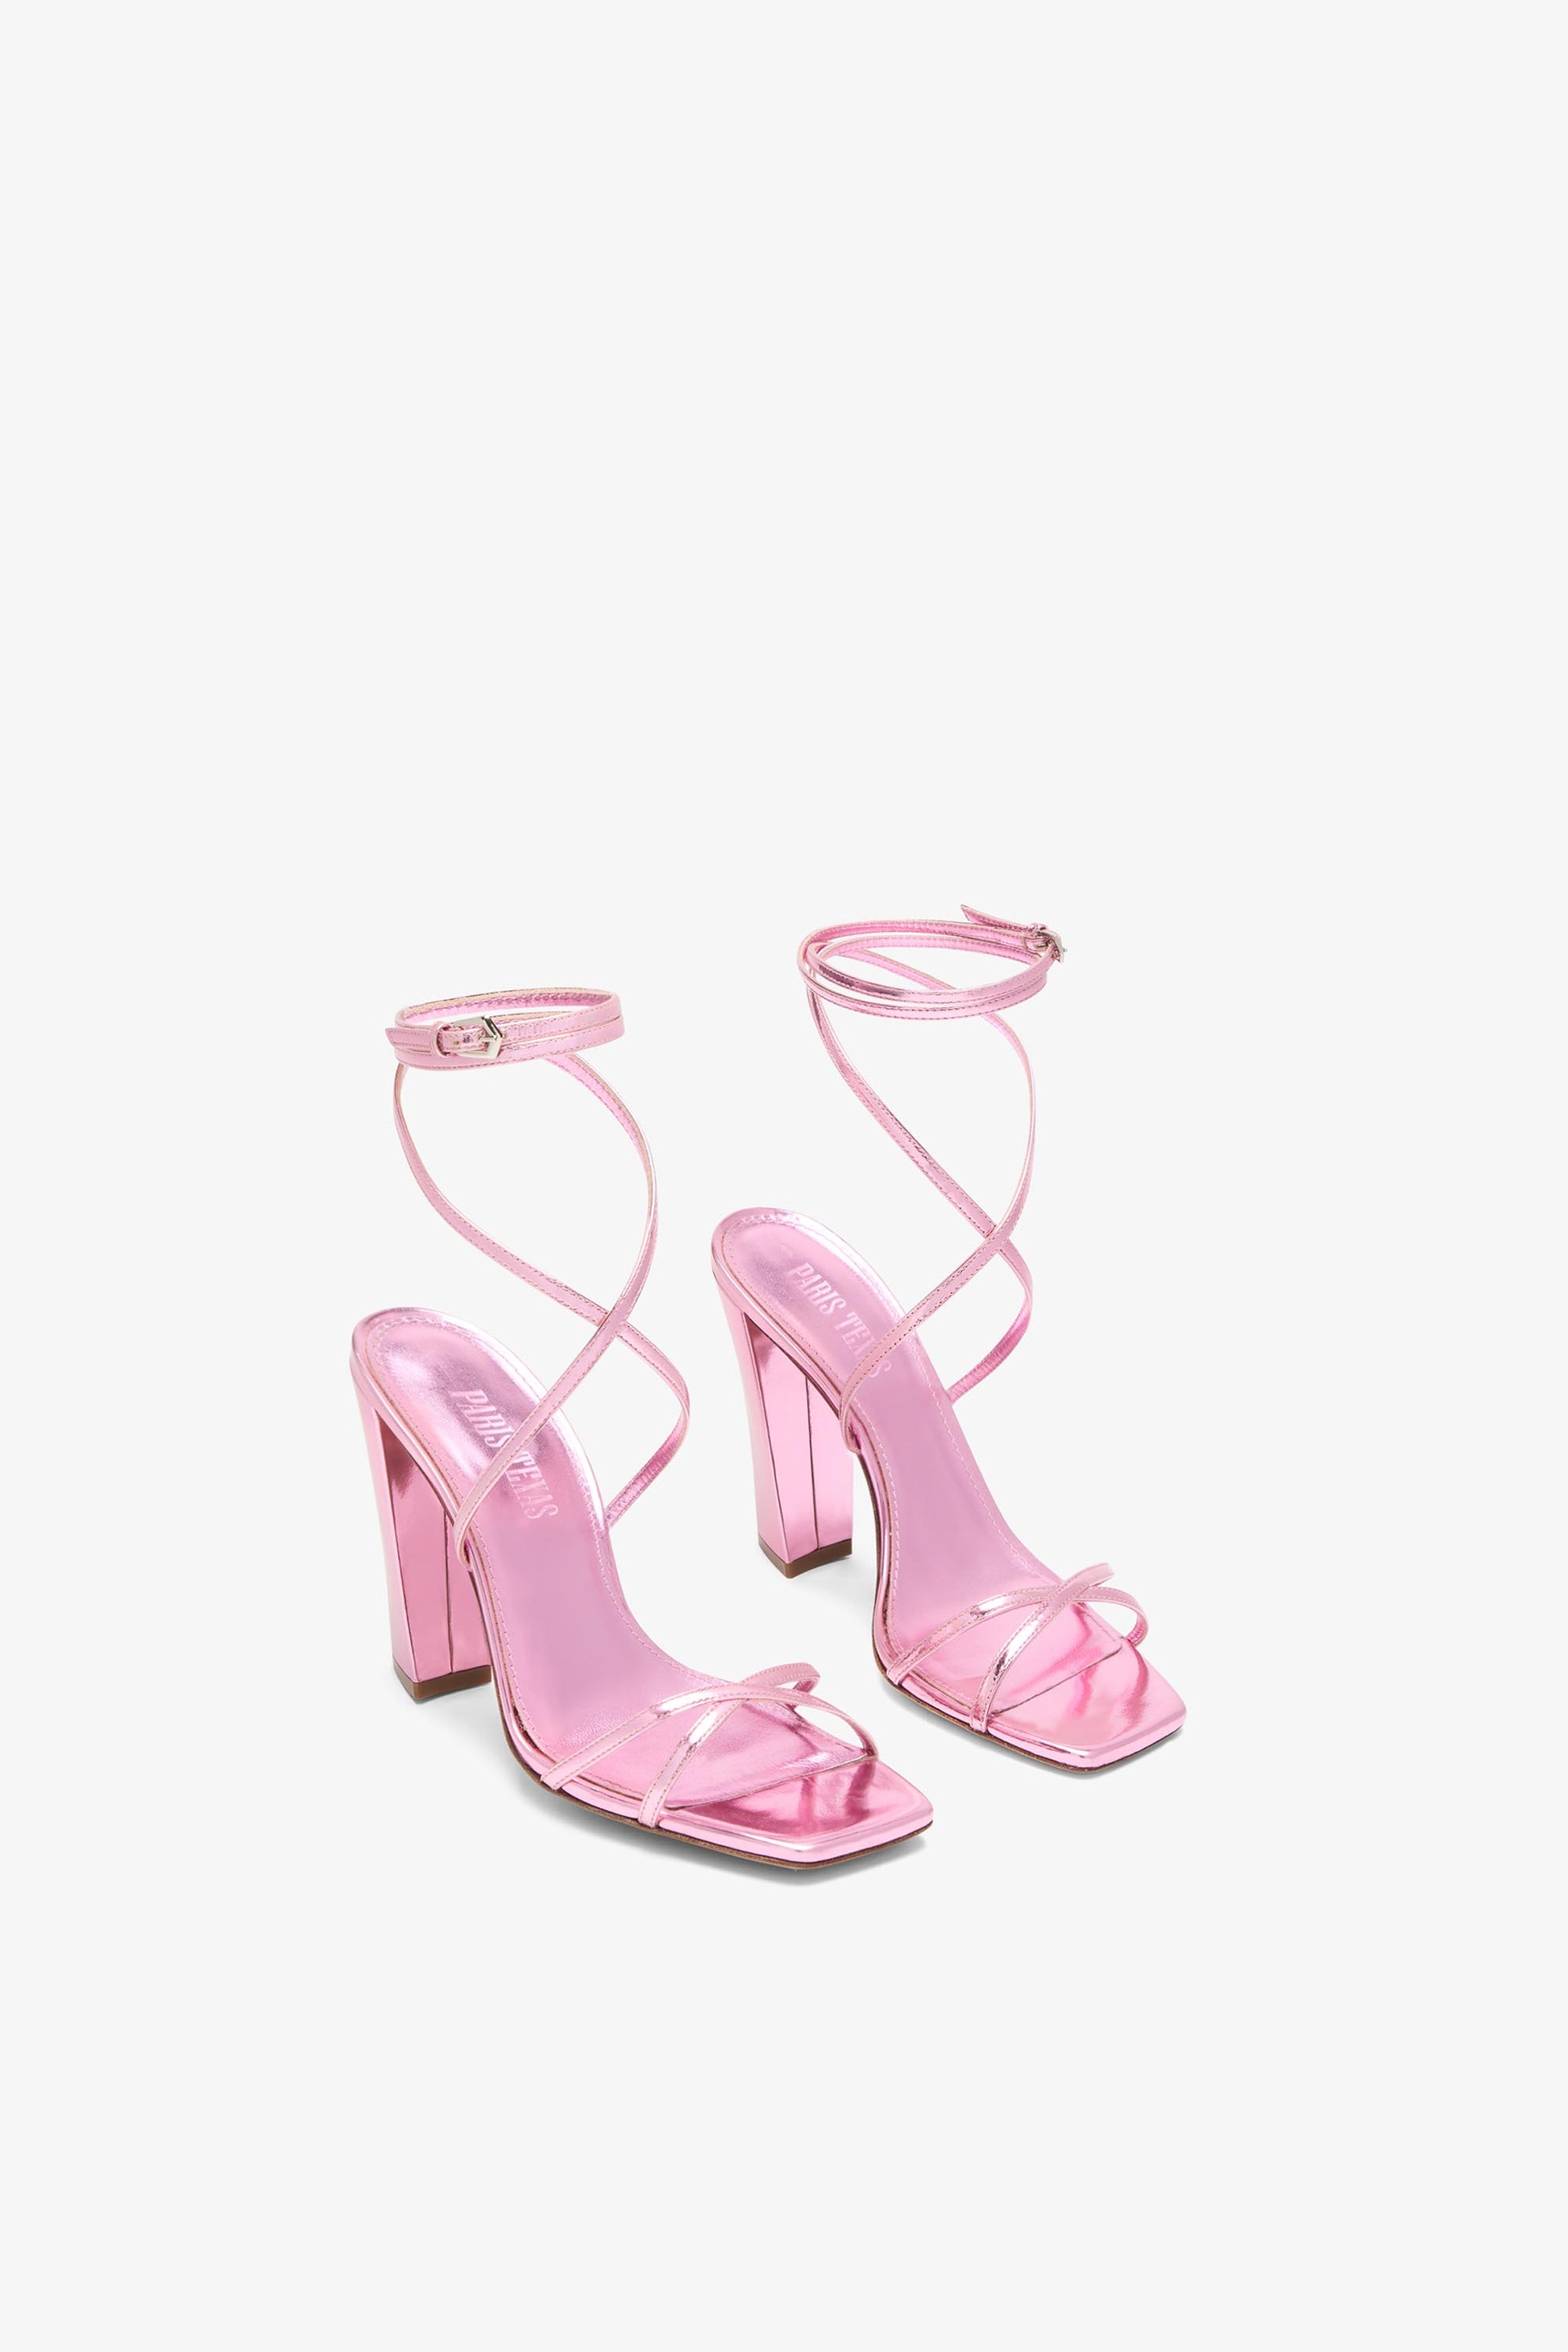 Sandales en cuir miroir rose